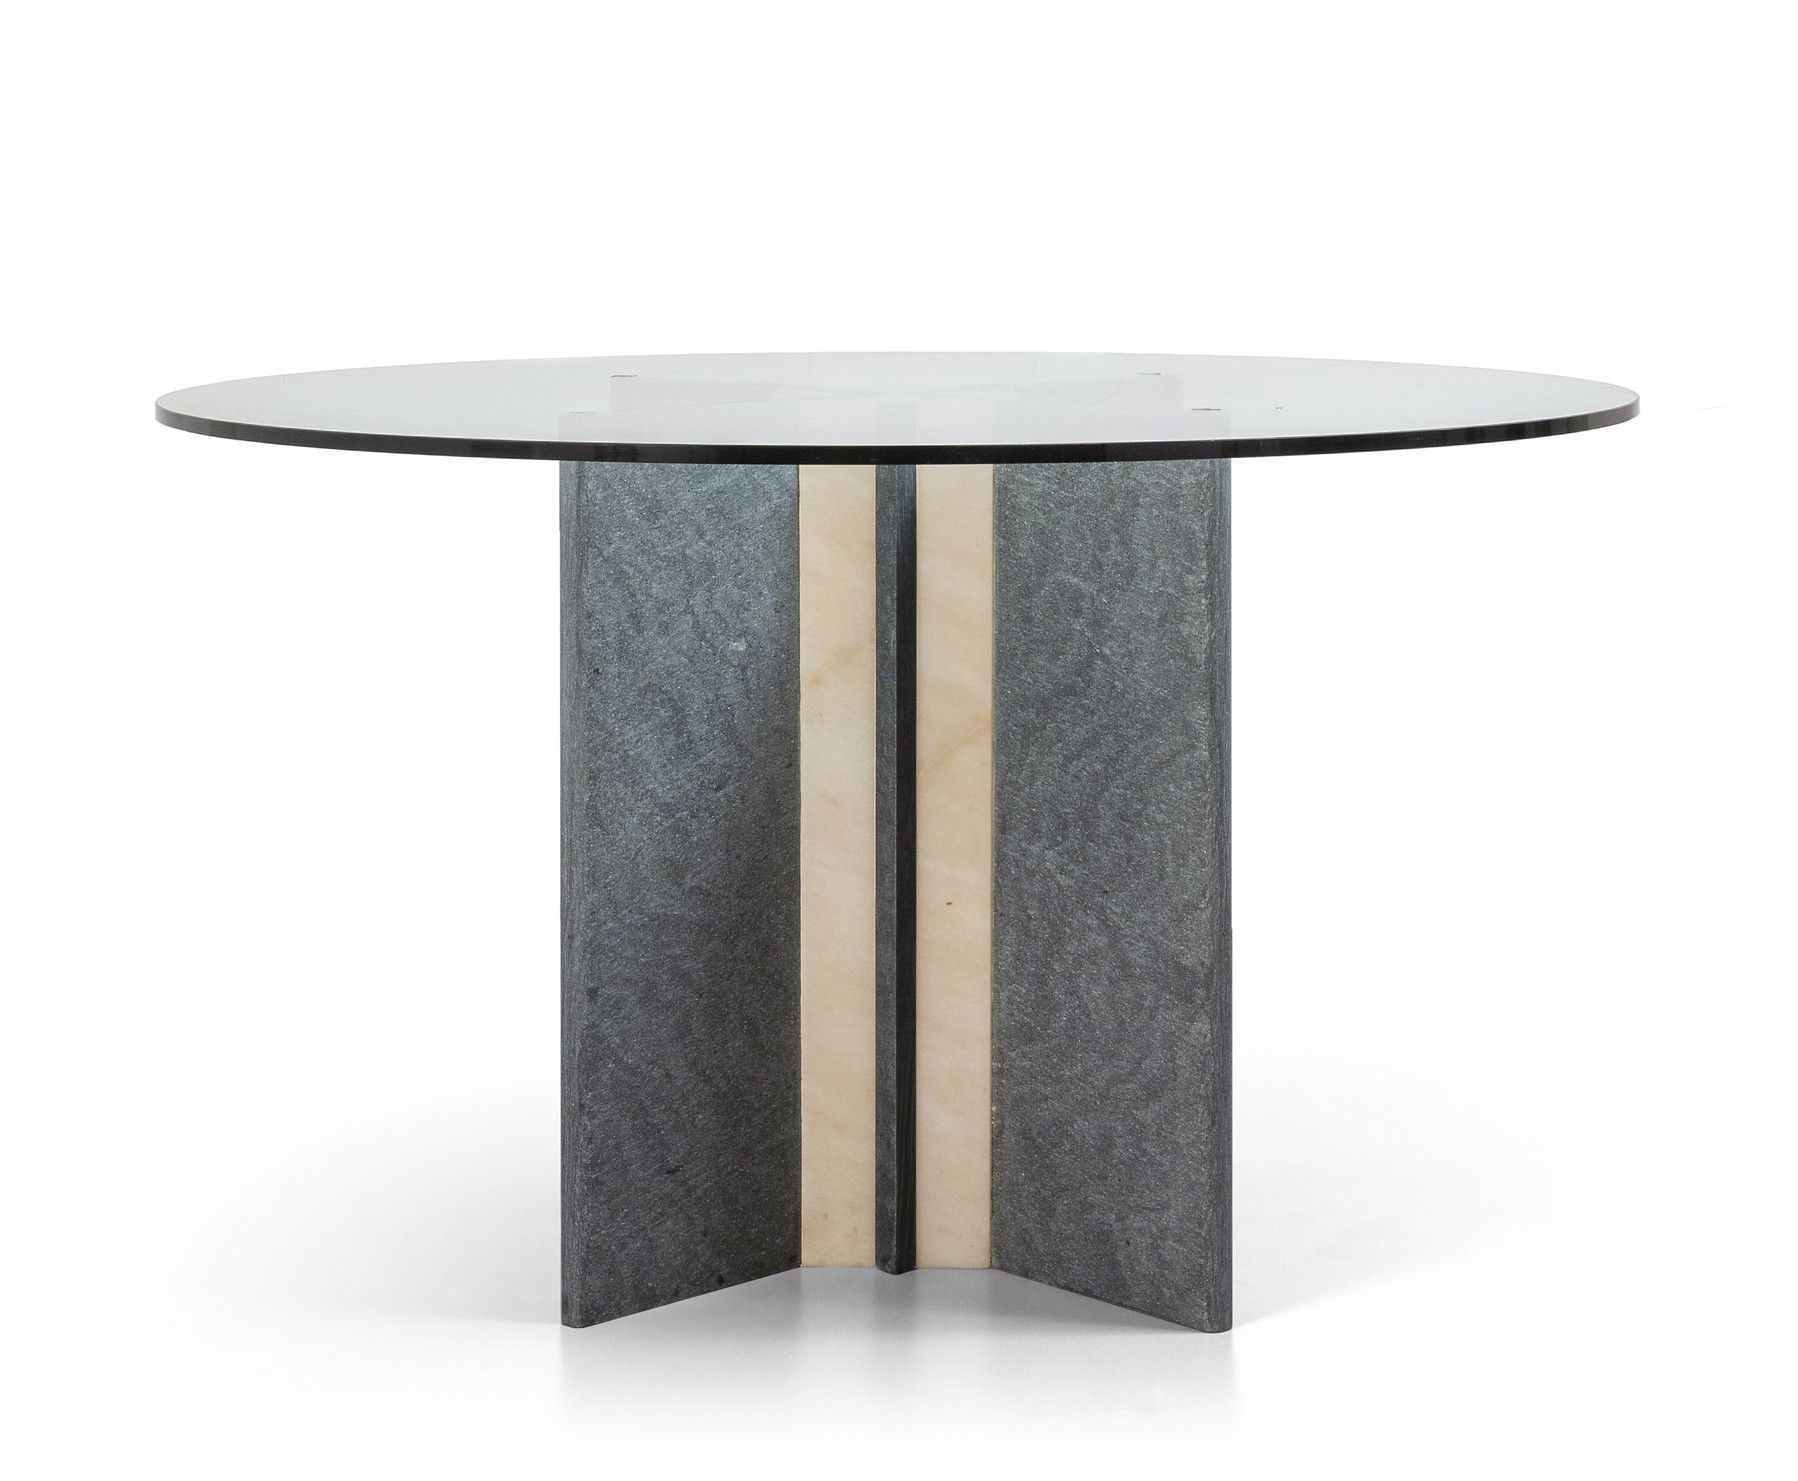 TAVOLO 一张1970年代的桌子。
大理石和灰色石头底座
水晶顶。
高度76厘米，直径120厘米。